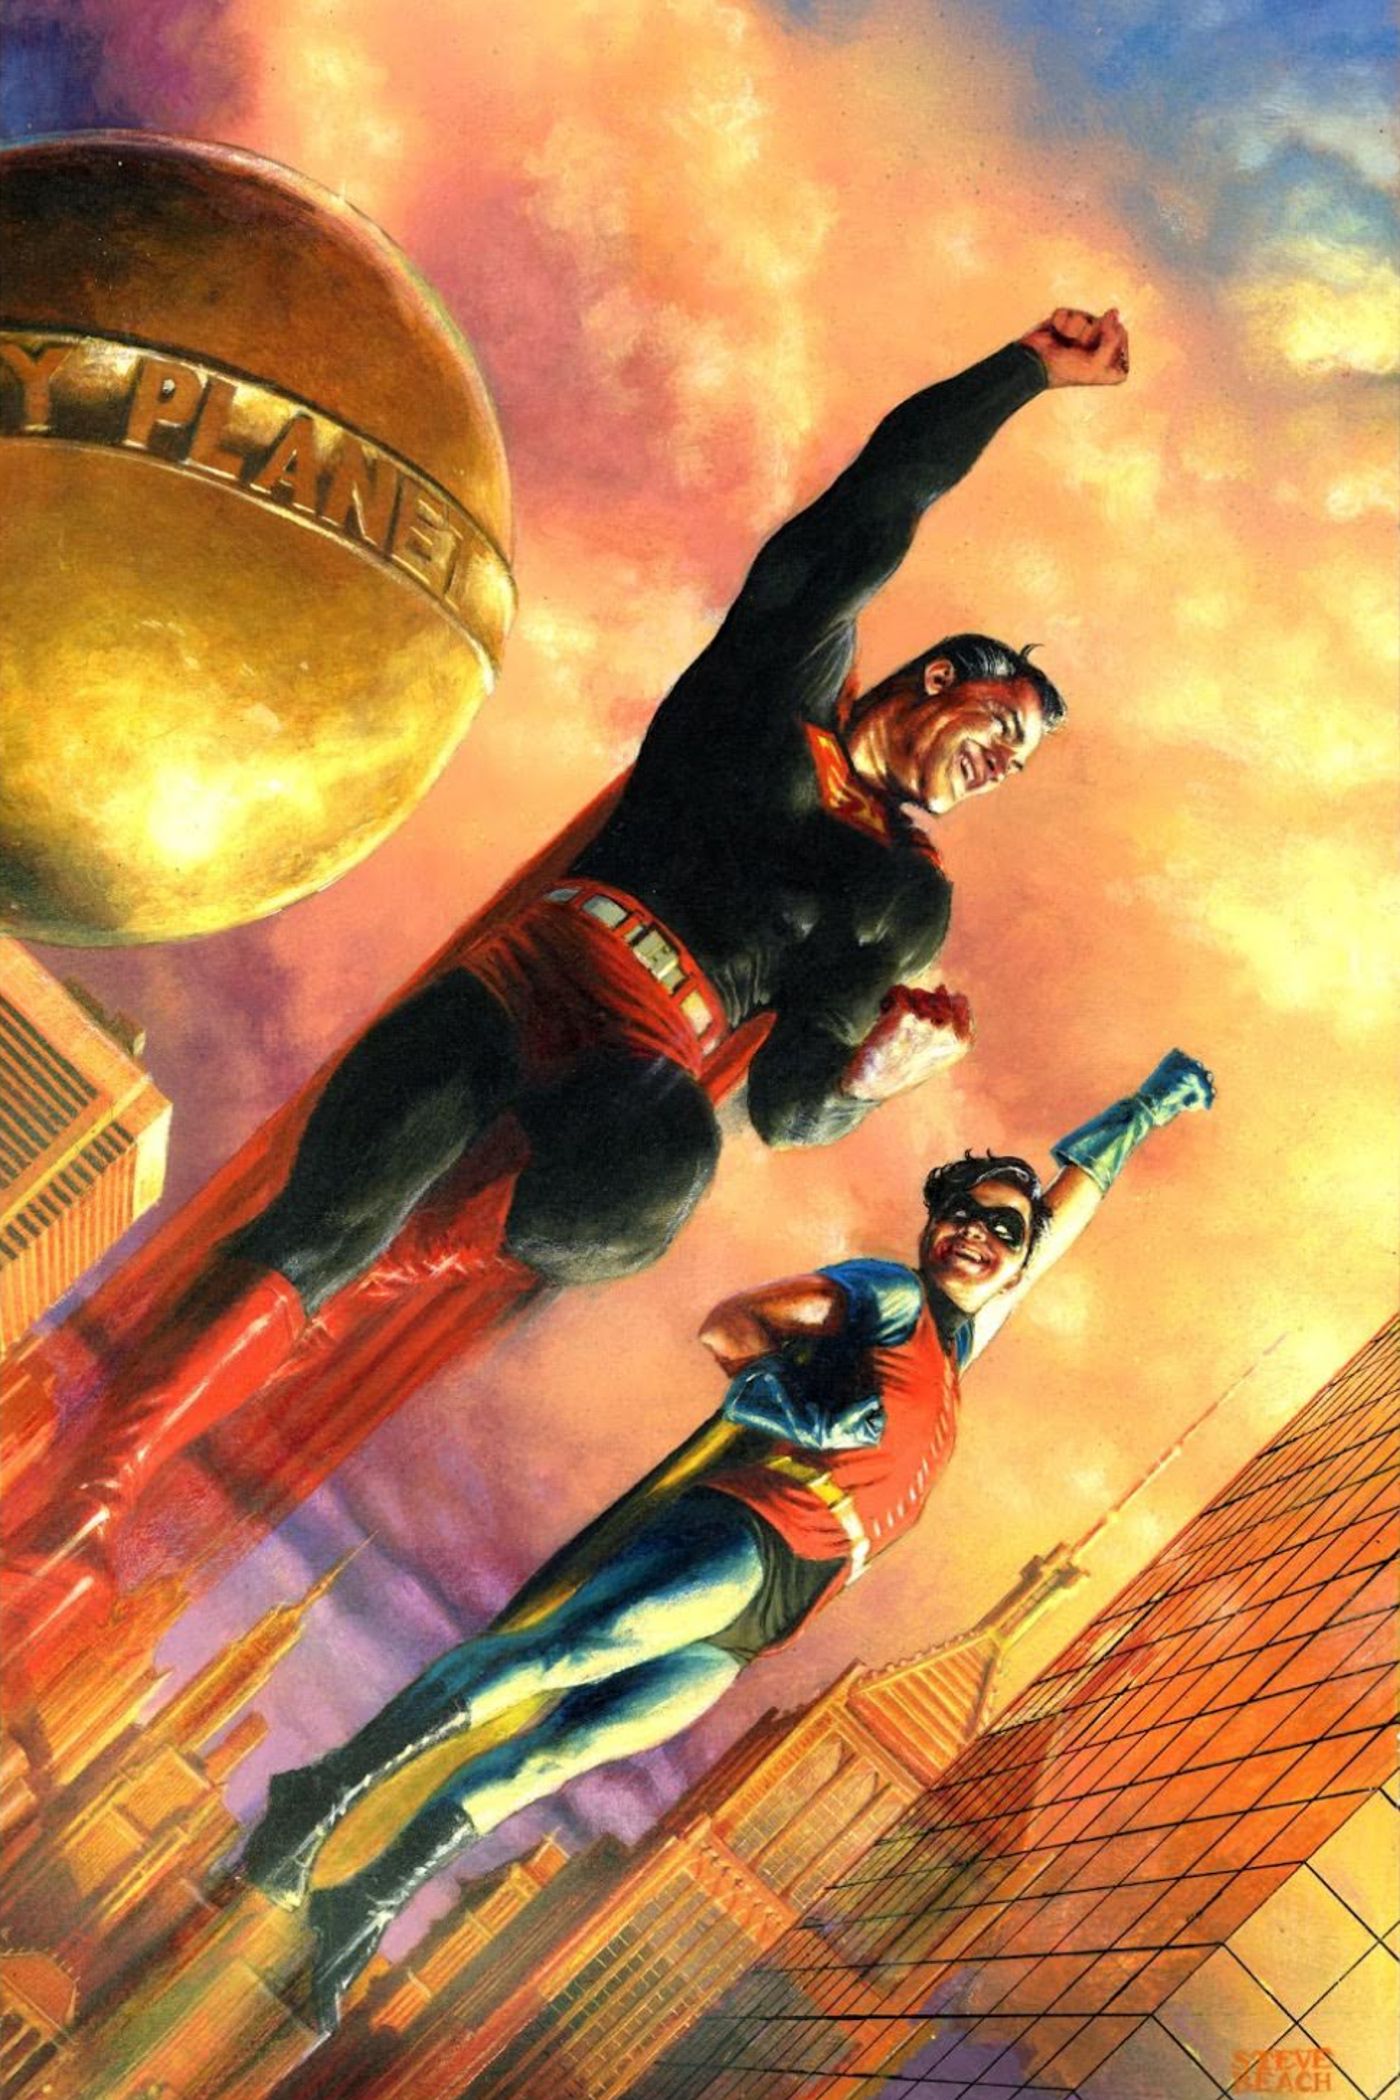 Superman and a Robin-esque Superboy flying through Metropolis.